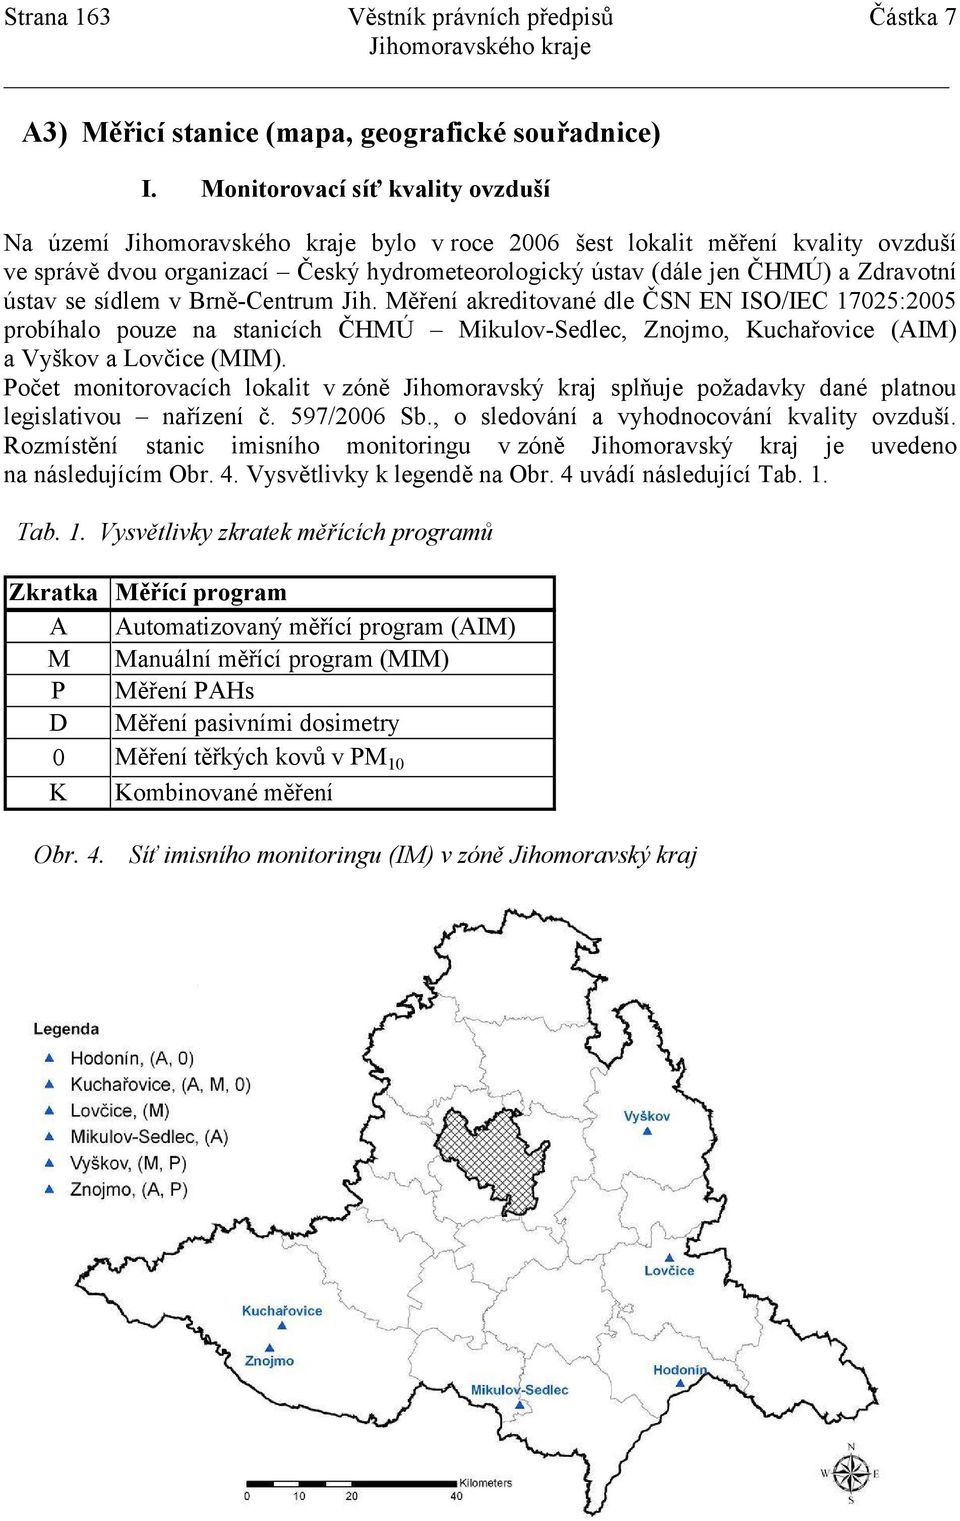 Brně-Centrum Jih. Měření akreditované dle ČSN EN ISO/IEC 17025:2005 probíhalo pouze na stanicích ČHMÚ Mikulov-Sedlec, Znojmo, Kuchařovice (AIM) a Vyškov a Lovčice (MIM).